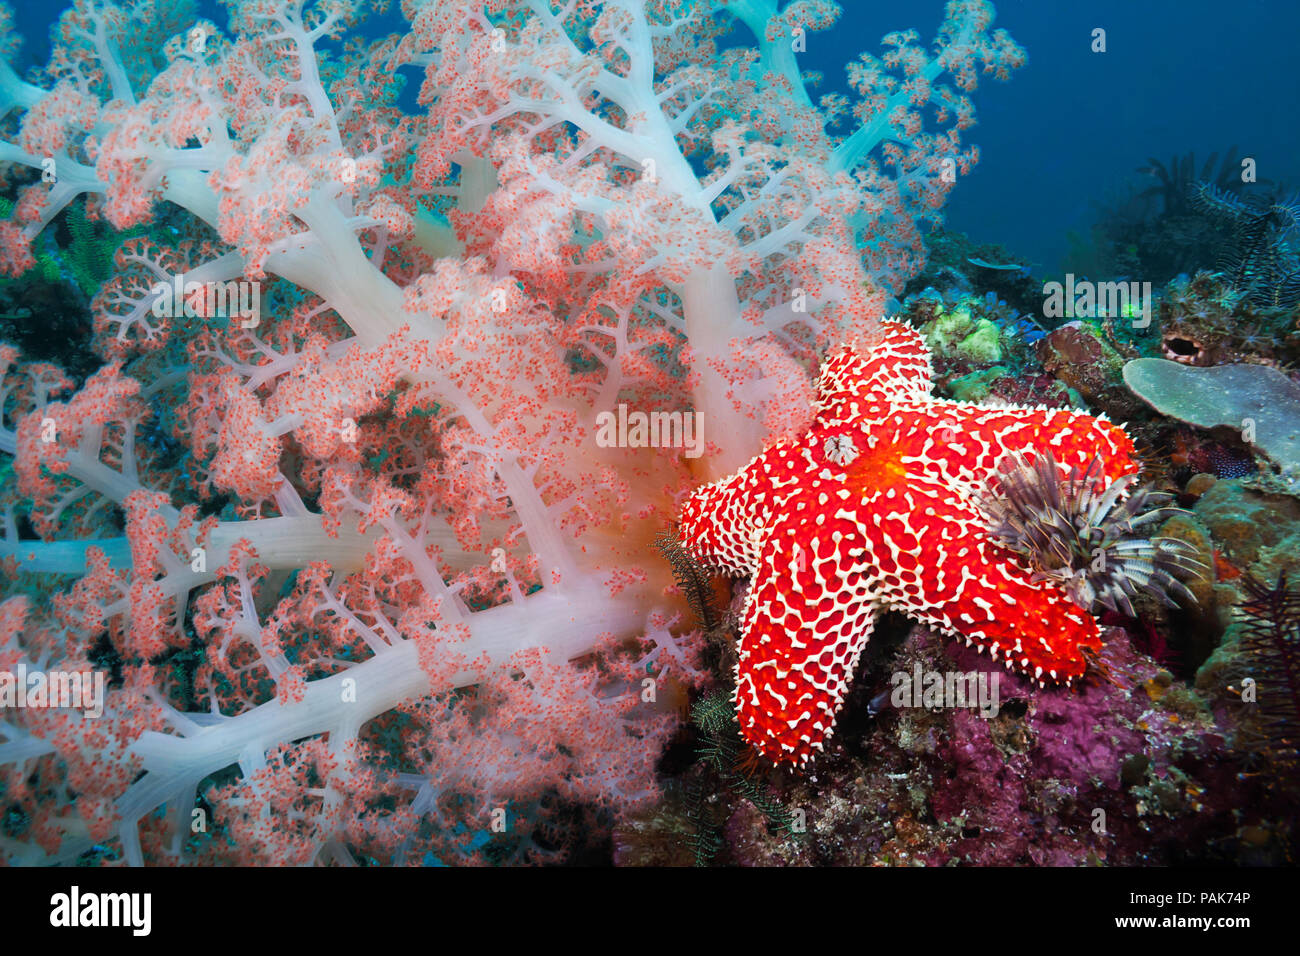 Alconarian corail, étoile de mer, crinoïdes et une plume worm poussière tous concurrence pour l'espace dans cette scène de récif indonésien au large de l'île de Komodo Rinca dans National P Banque D'Images